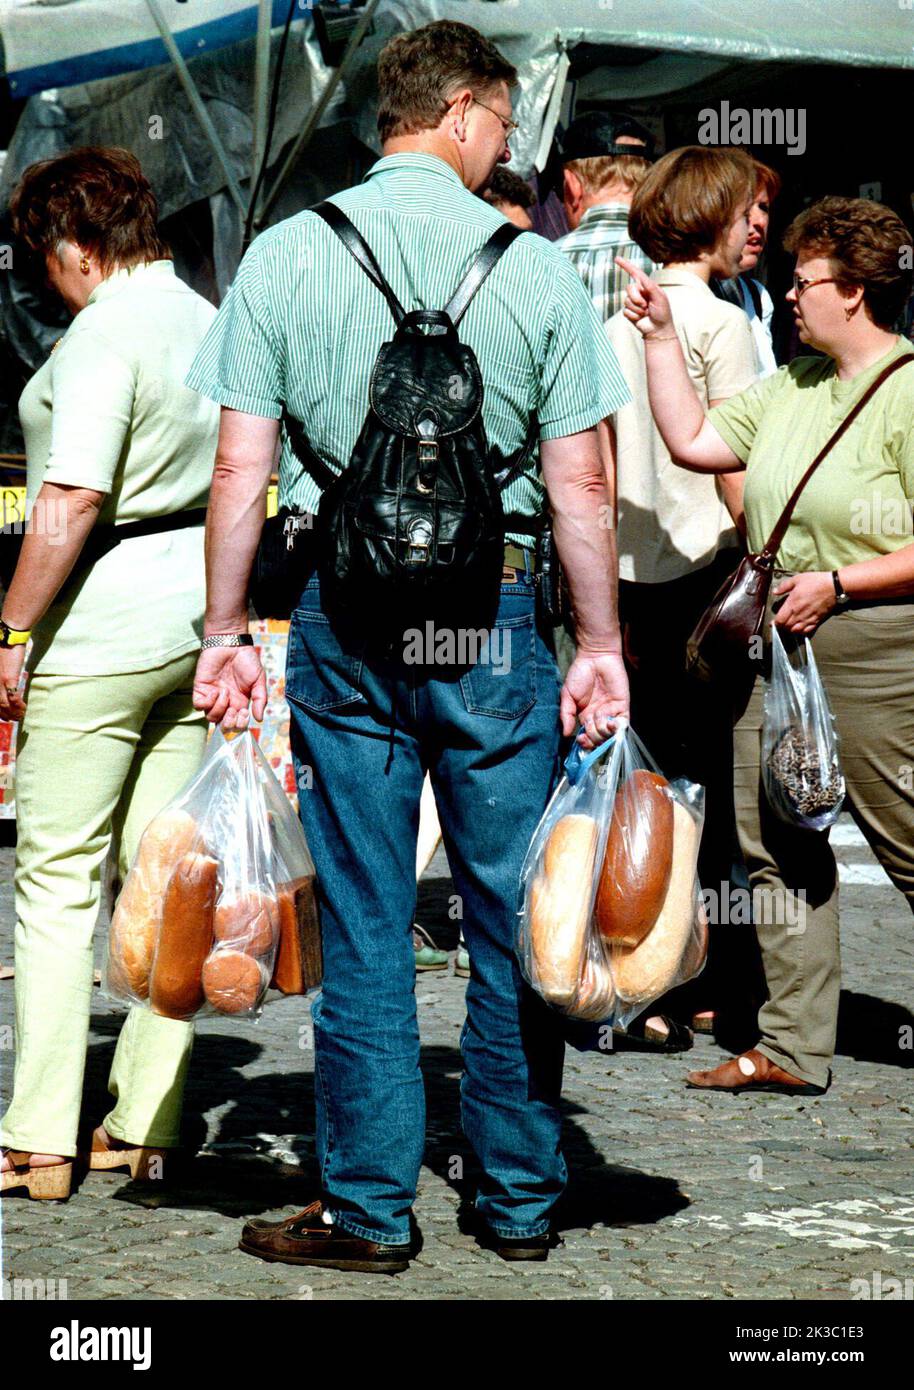 A man who bought fresh bread at a market place (Skänningemarken), Skänninge, Sweden Stock Photo